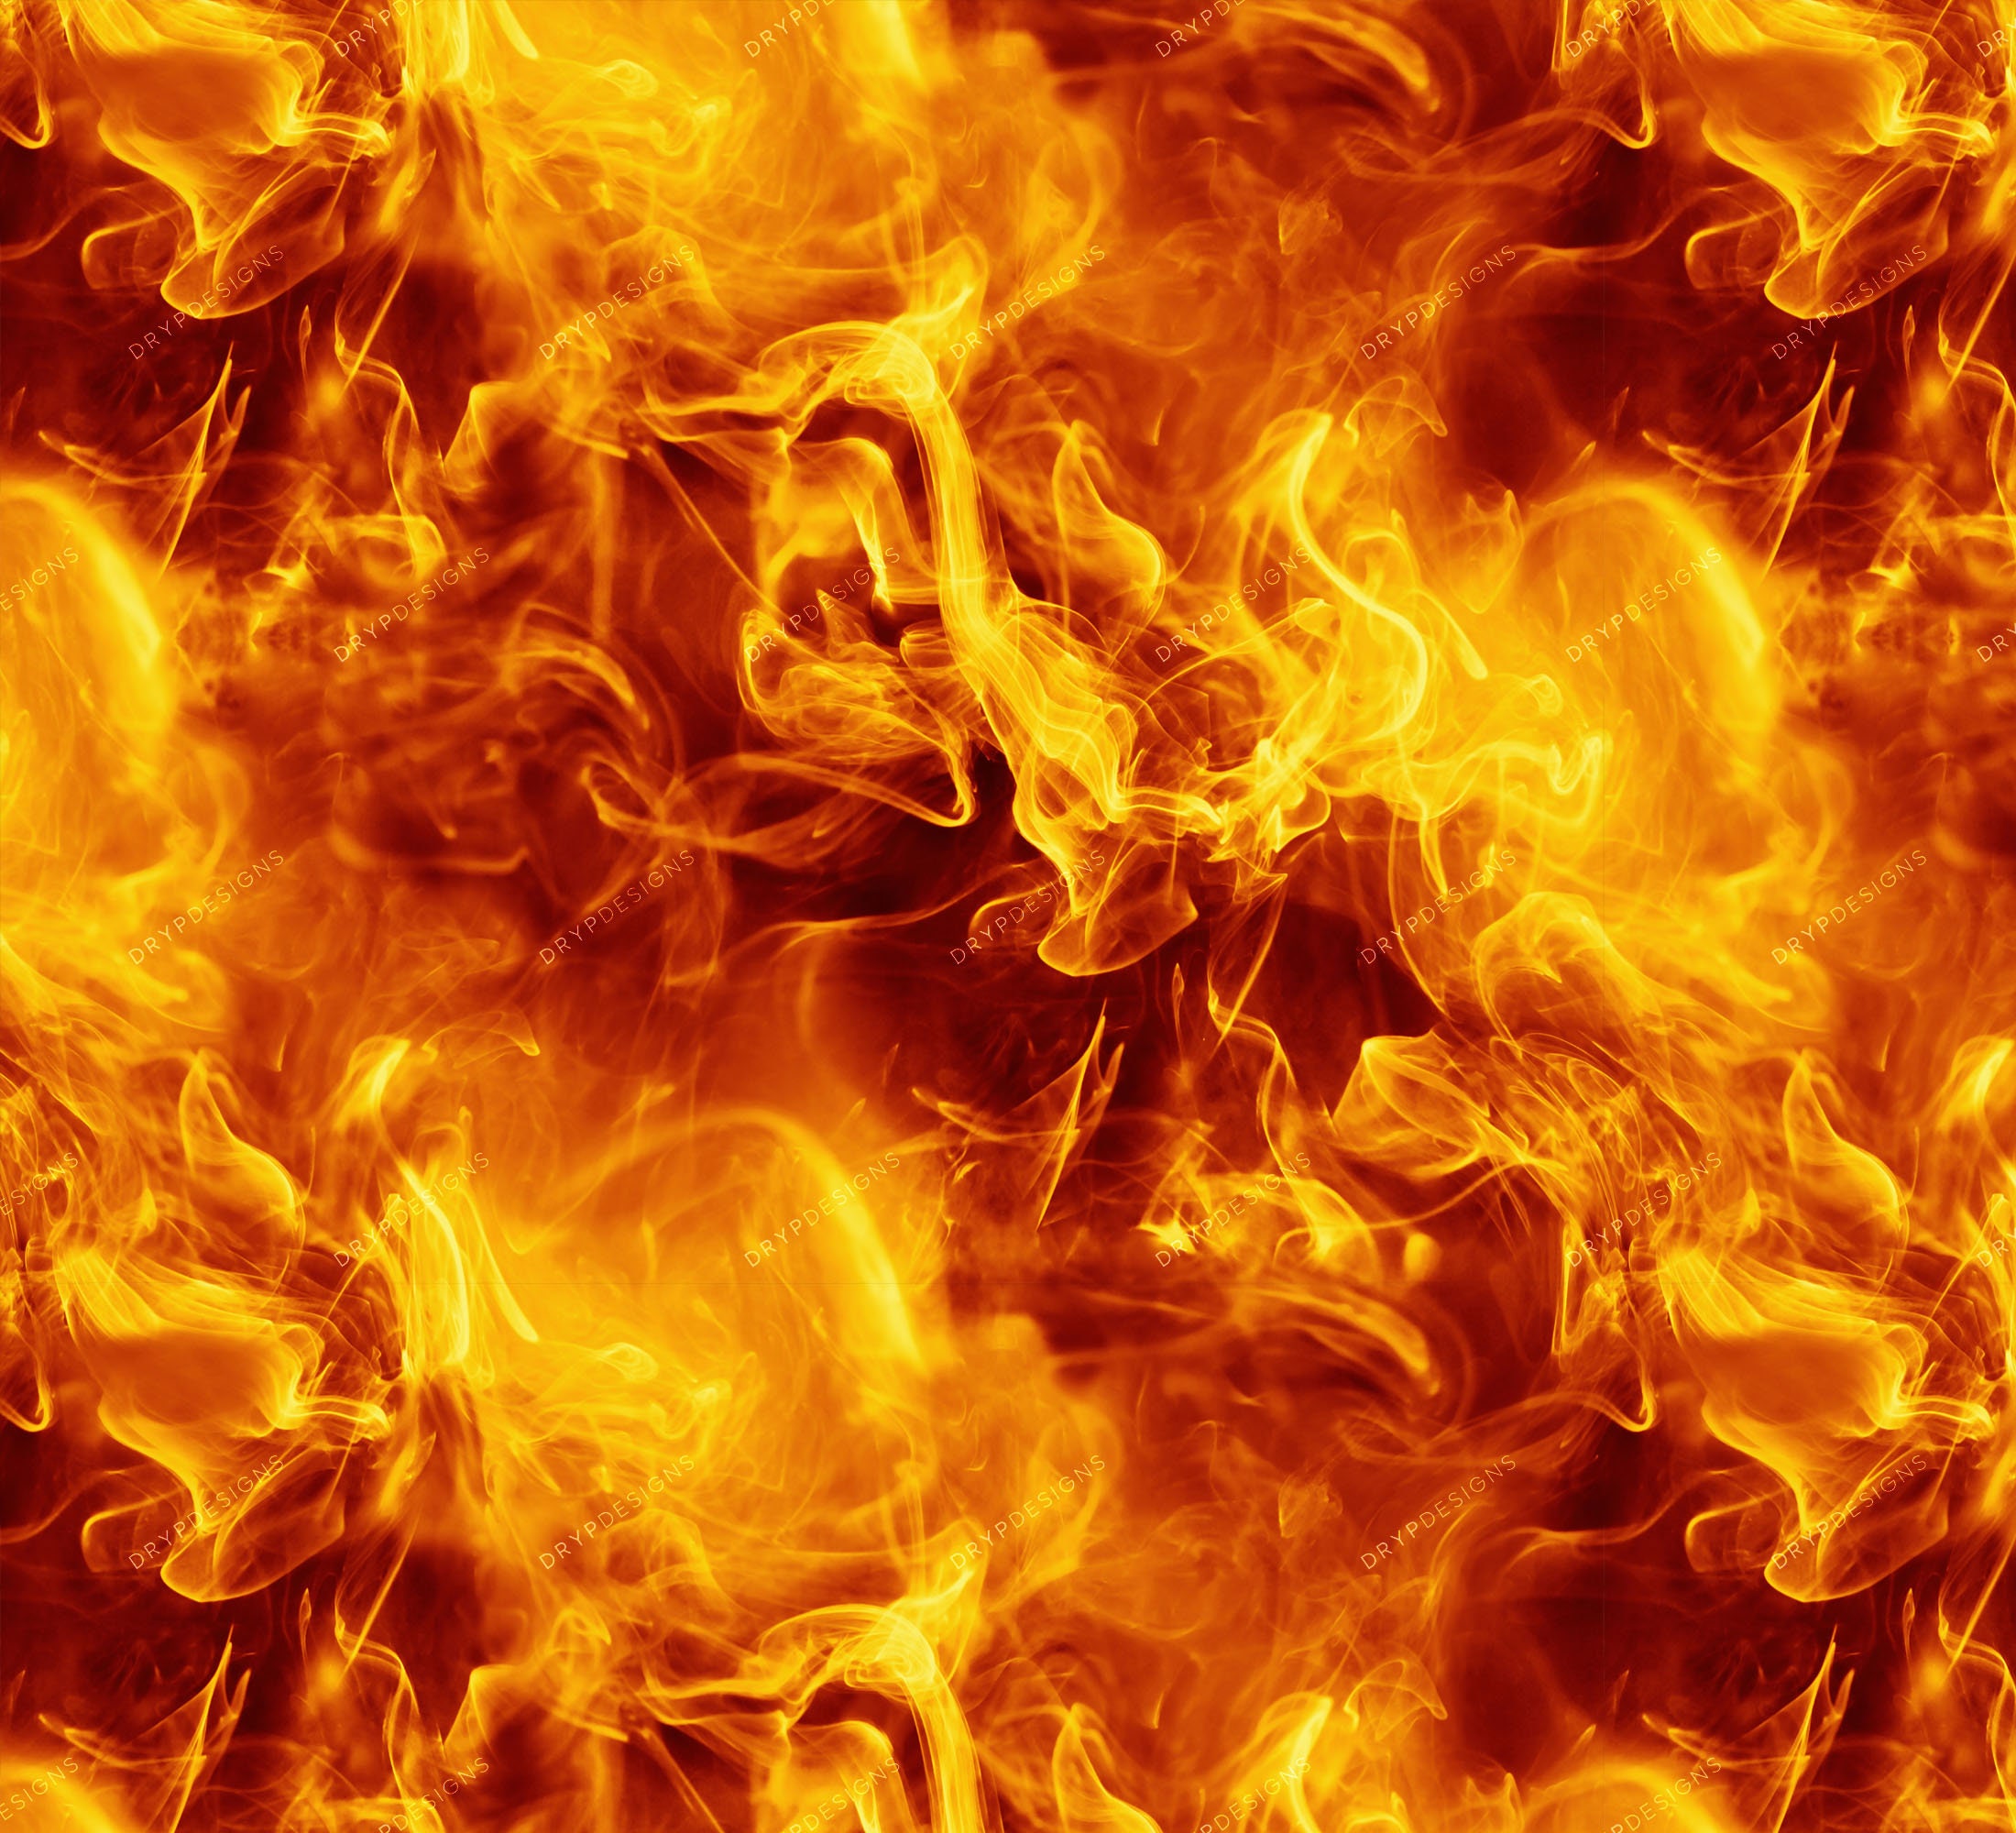 Sự hào nhoáng của ngọn lửa và những ngọn lửa bùng cháy rực rỡ đã được ghi lại một cách tuyệt vời trong hình ảnh. Nếu bạn yêu thích sự nóng bỏng, hãy đến với đoạn phóng sự này!